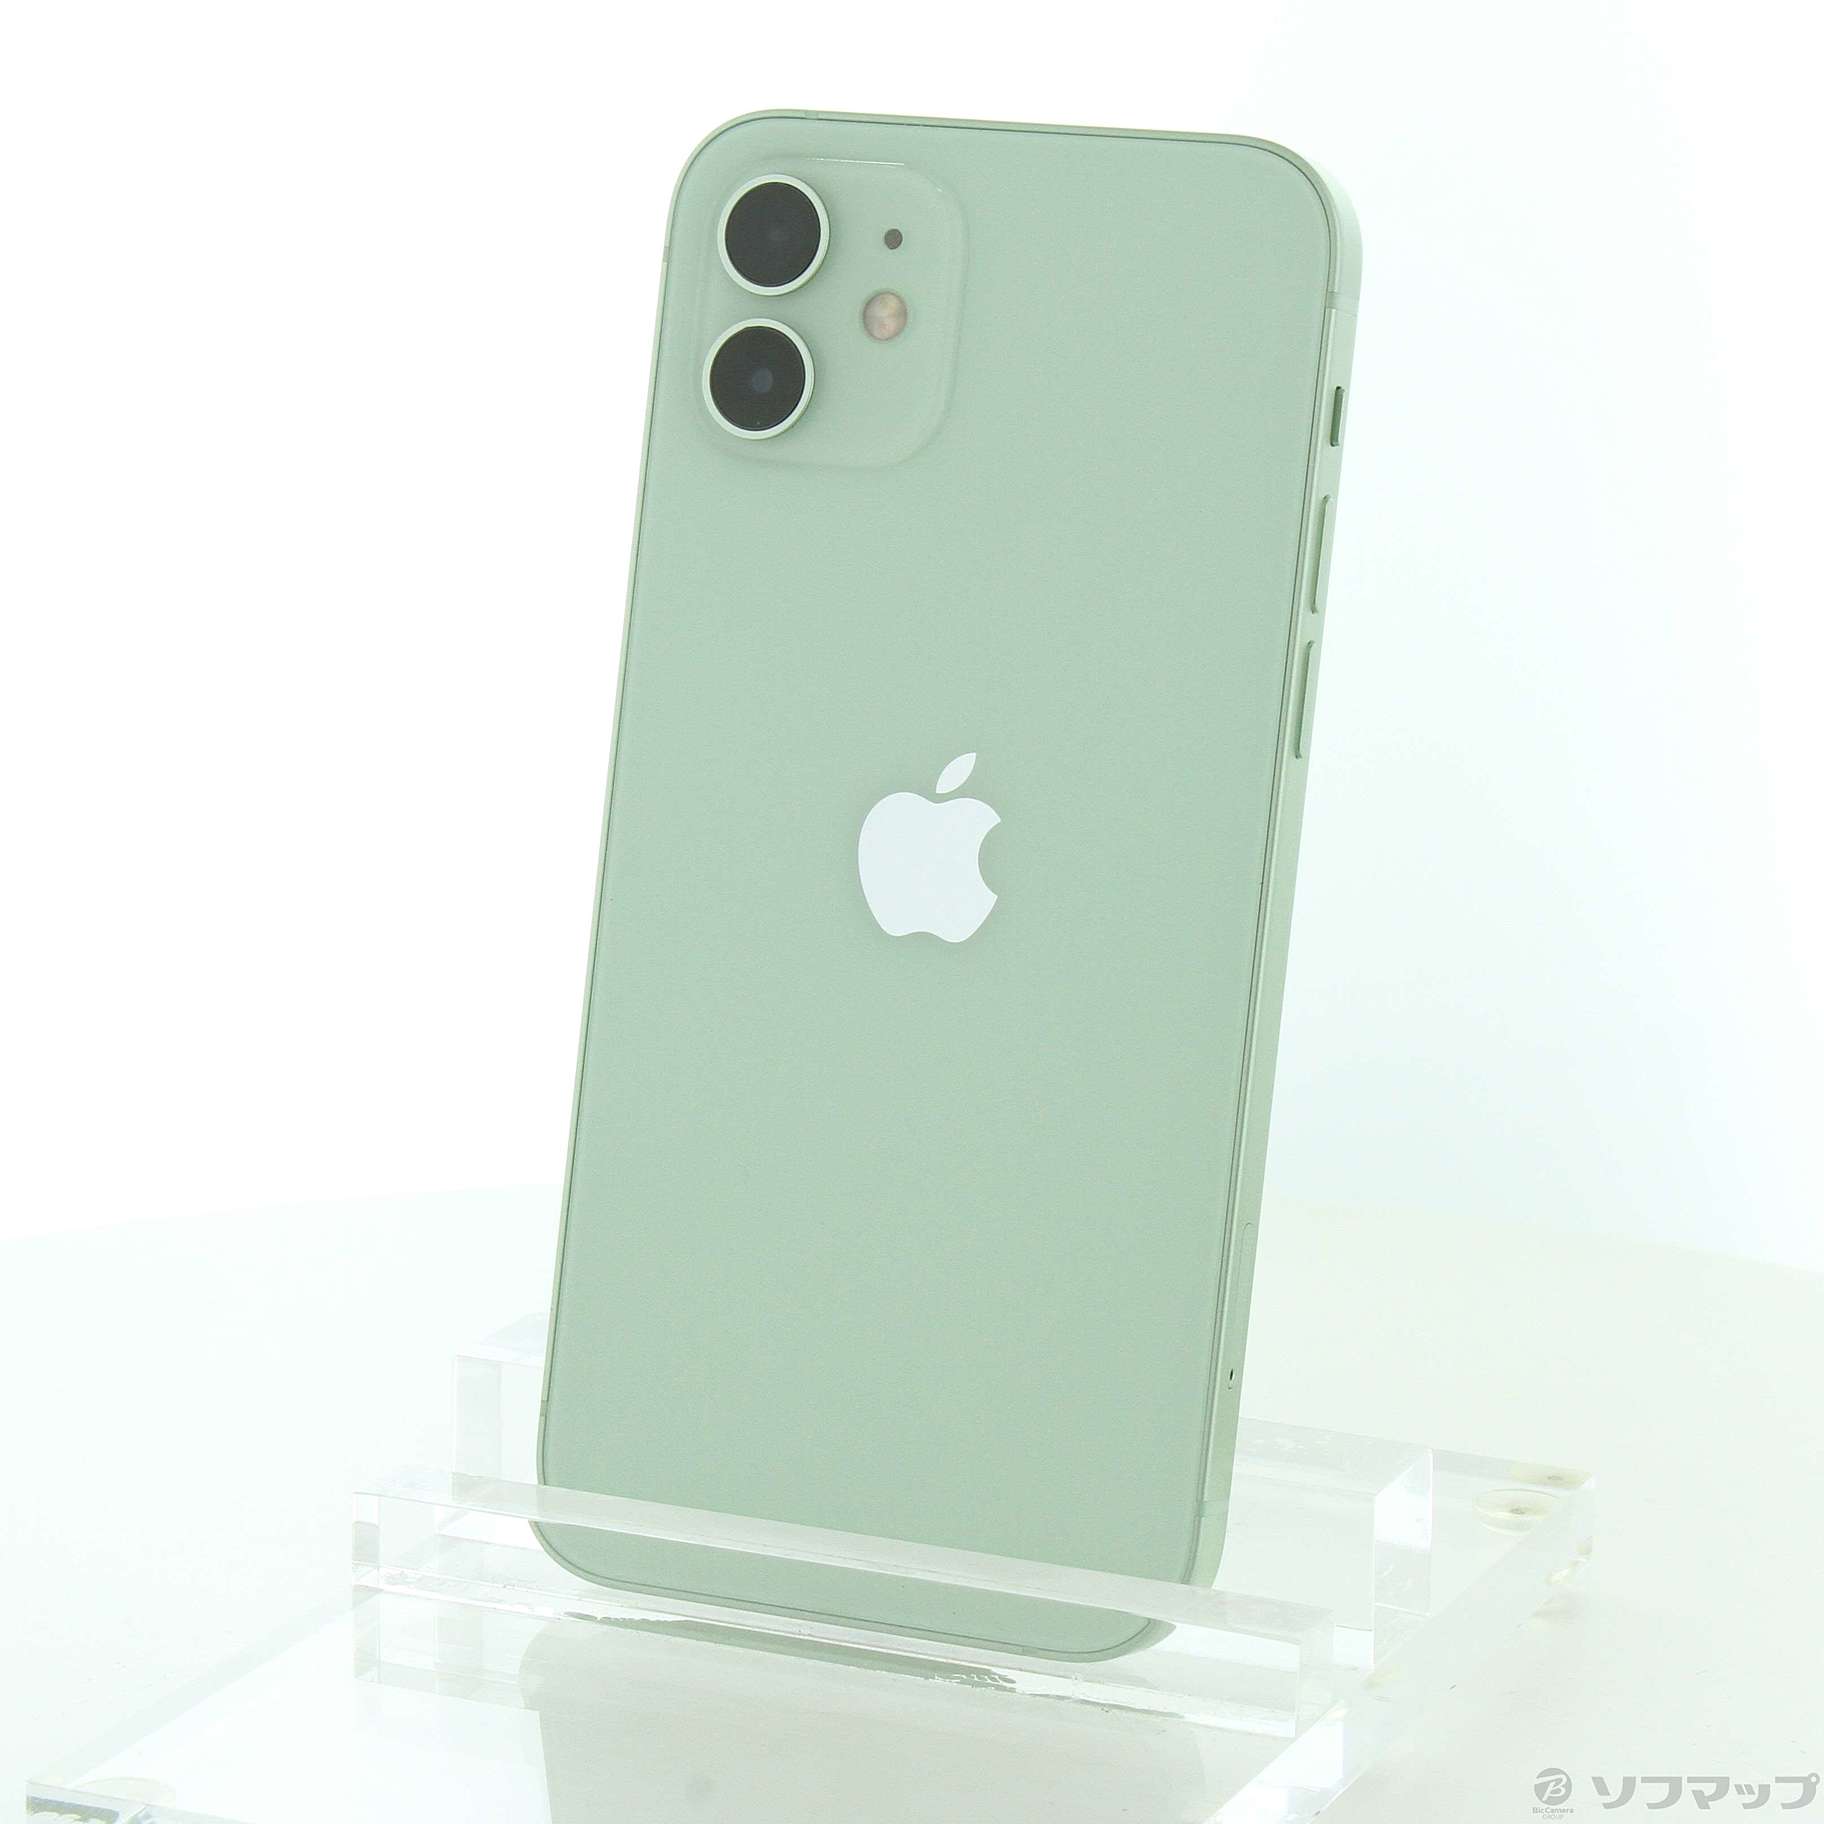 13,500円値下げ SIMフリー iPhone12 64gd 緑